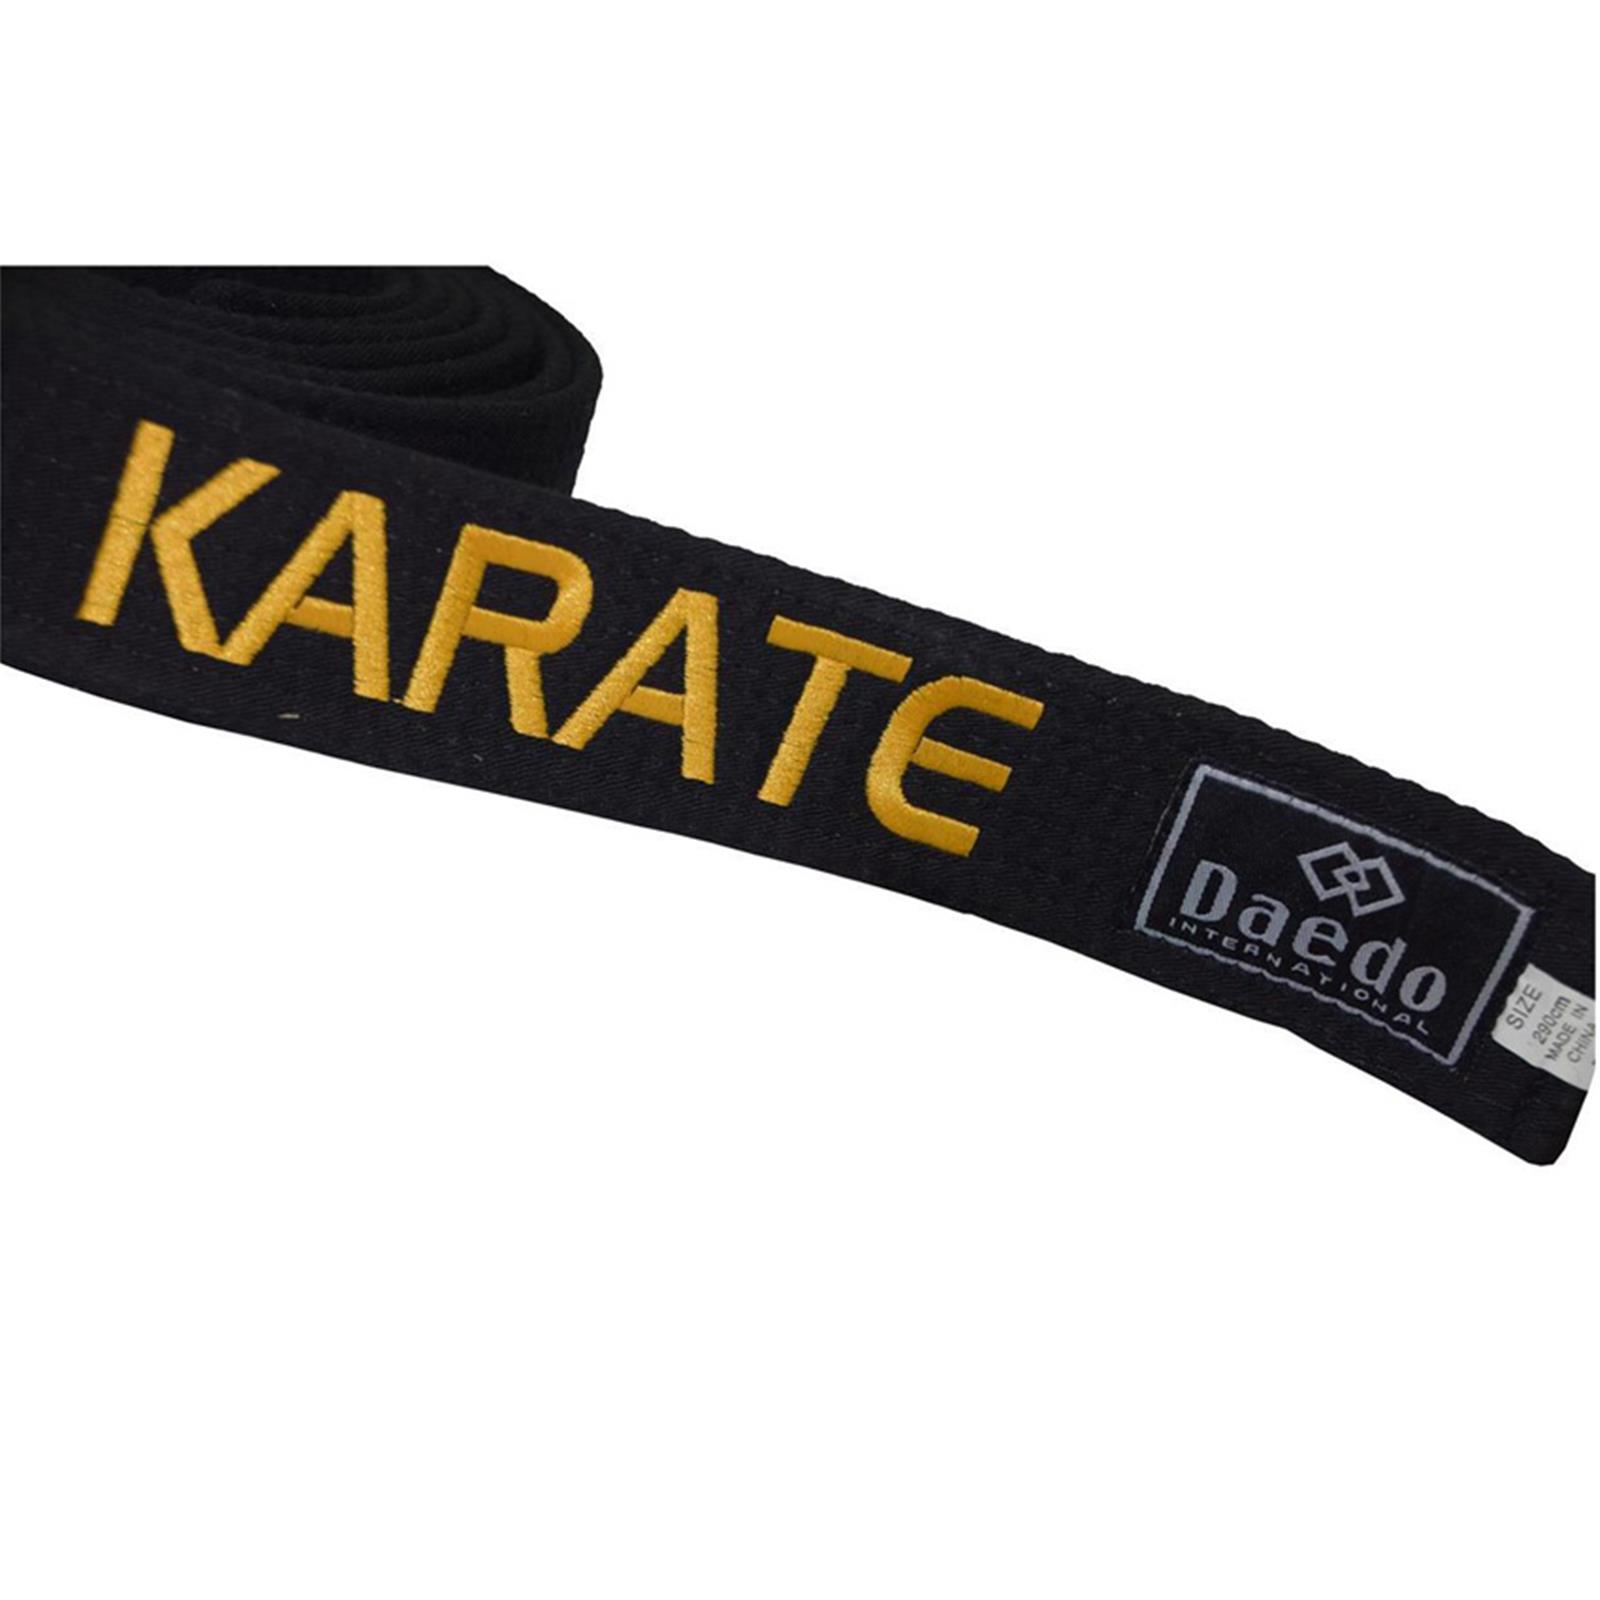 Dae Do Cintura Nera Karate ricamata Oro personalizzata (ALTEZZA 4,5 CM - Tag. 5° CM  290)